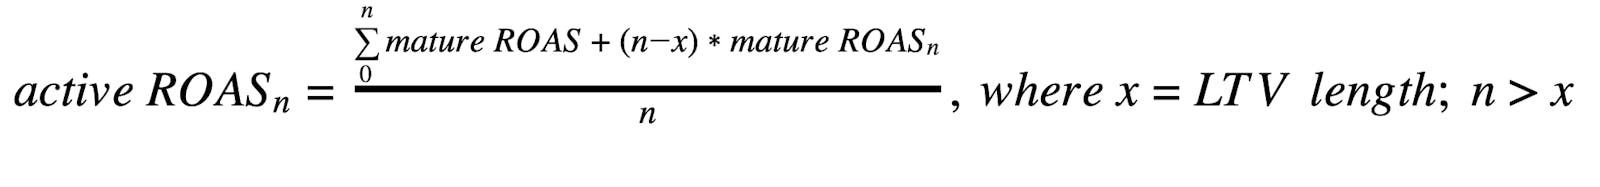 Active ROAS formula, part two